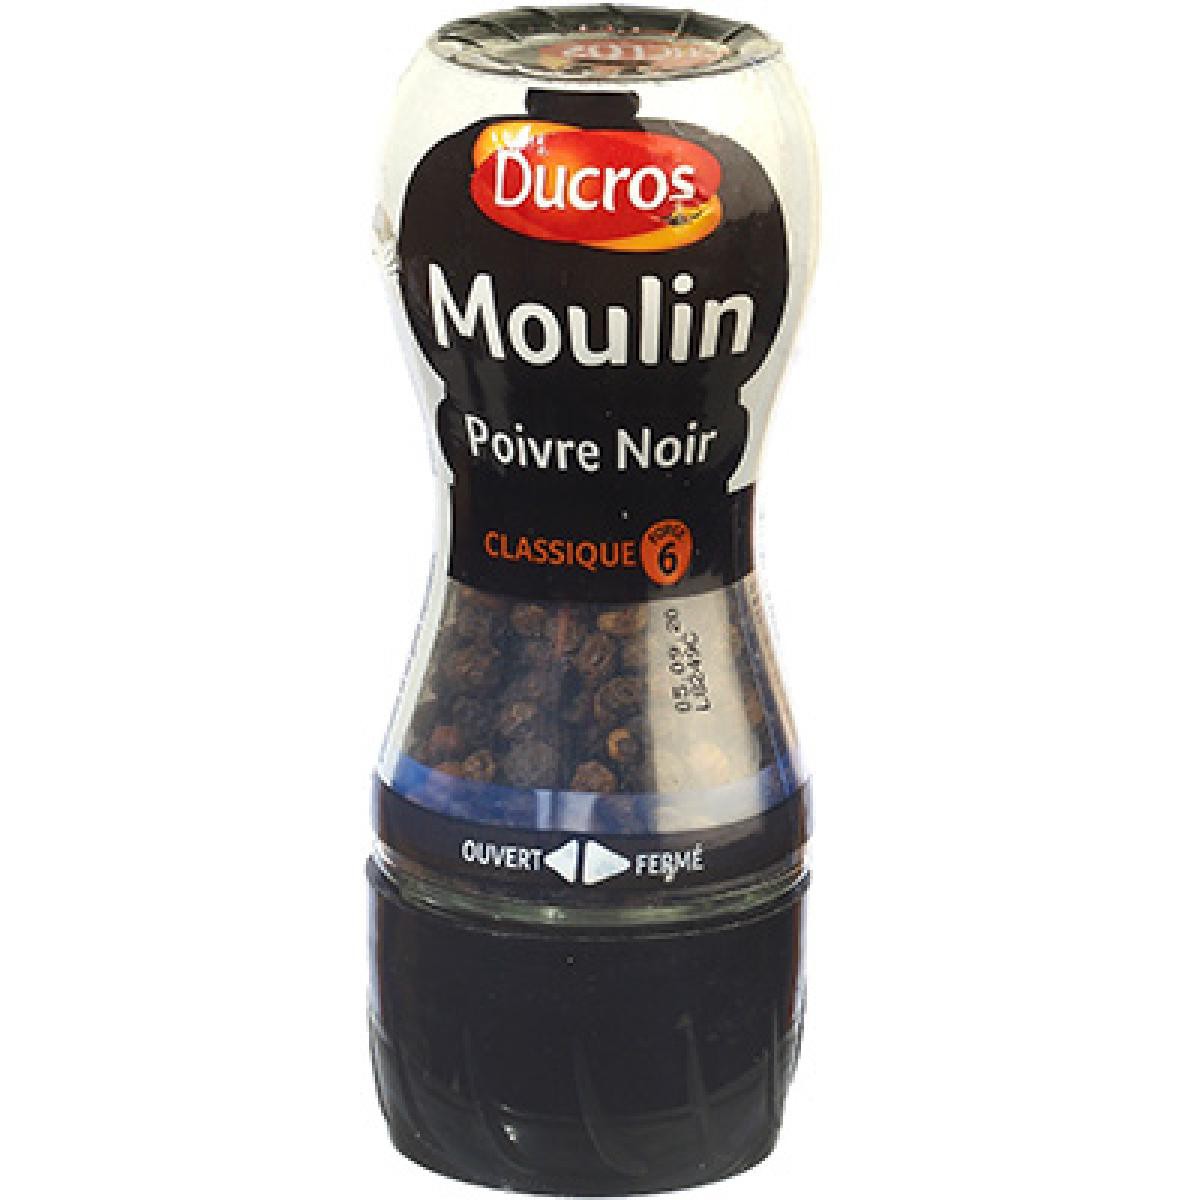 Ducros Moulin Poivre Noir 28g